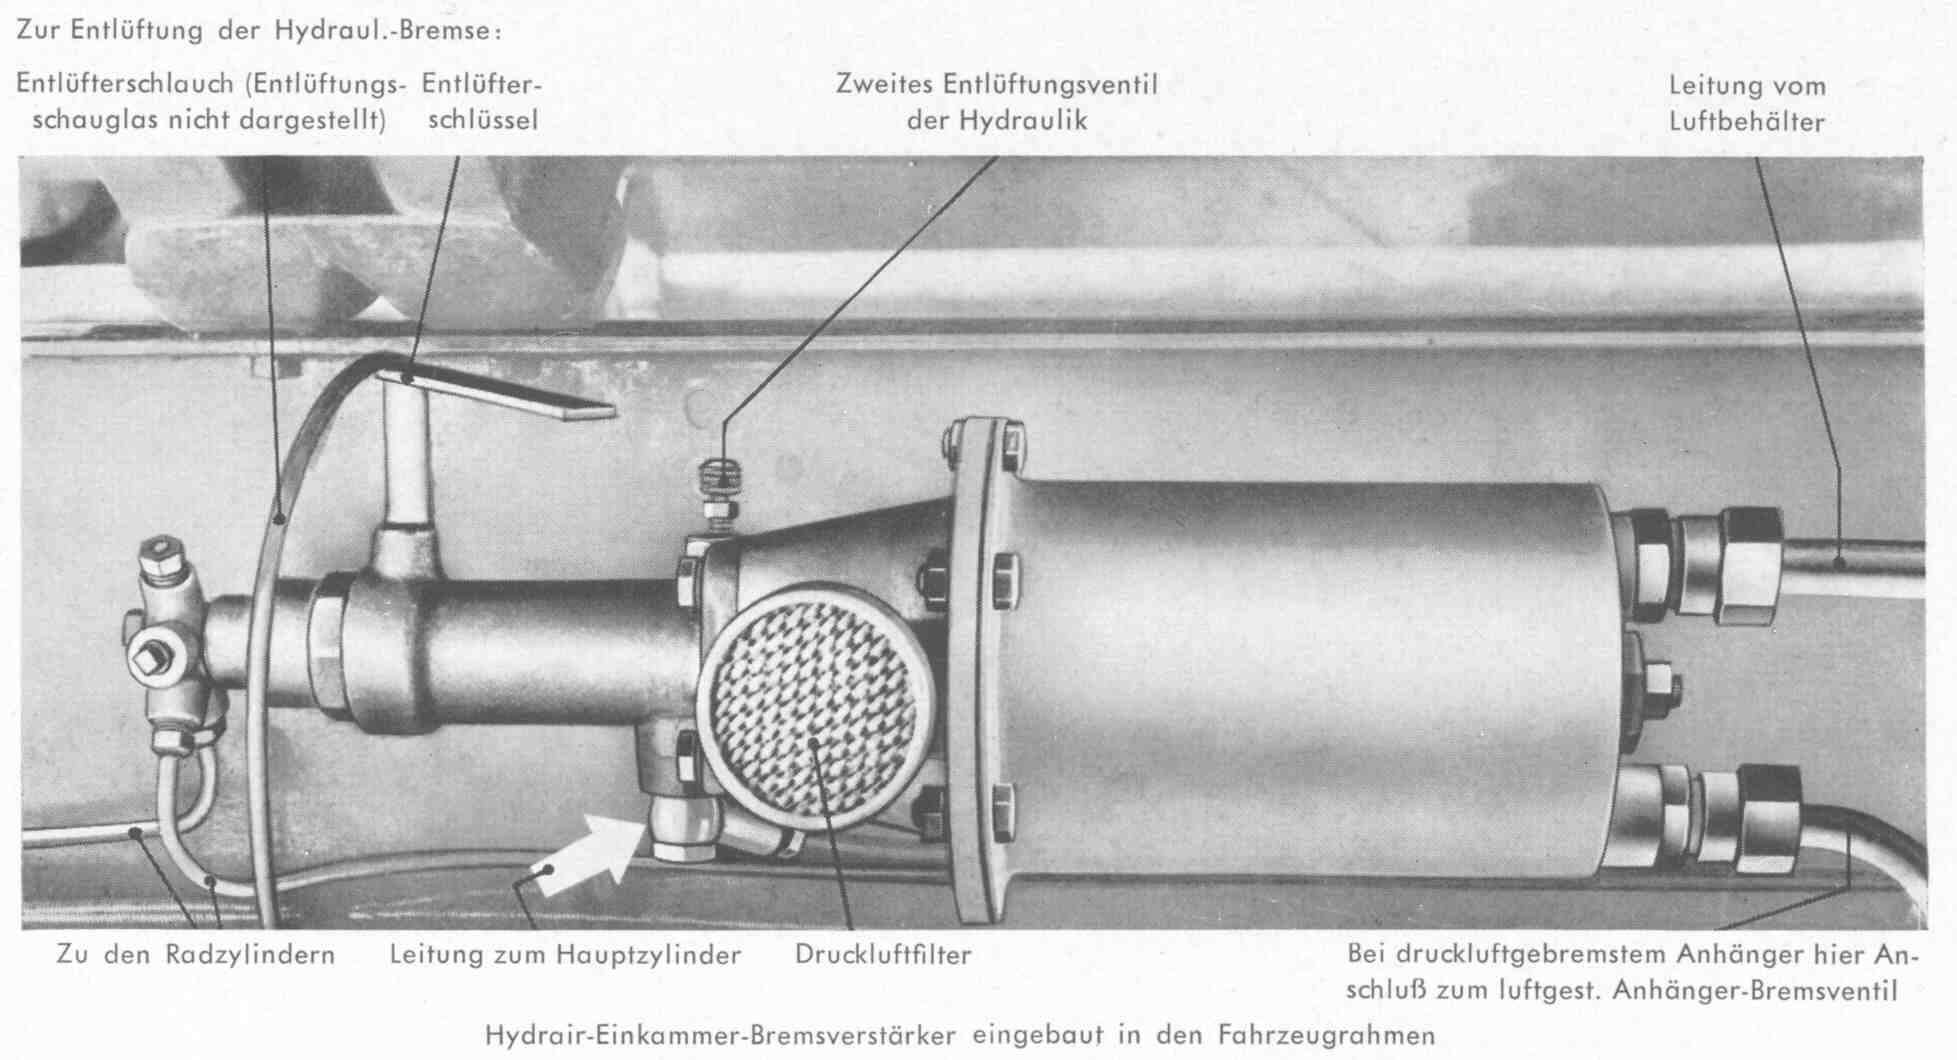 Hydrair-Einkammer-Bremsverstärker im Fahrzeugrahmen